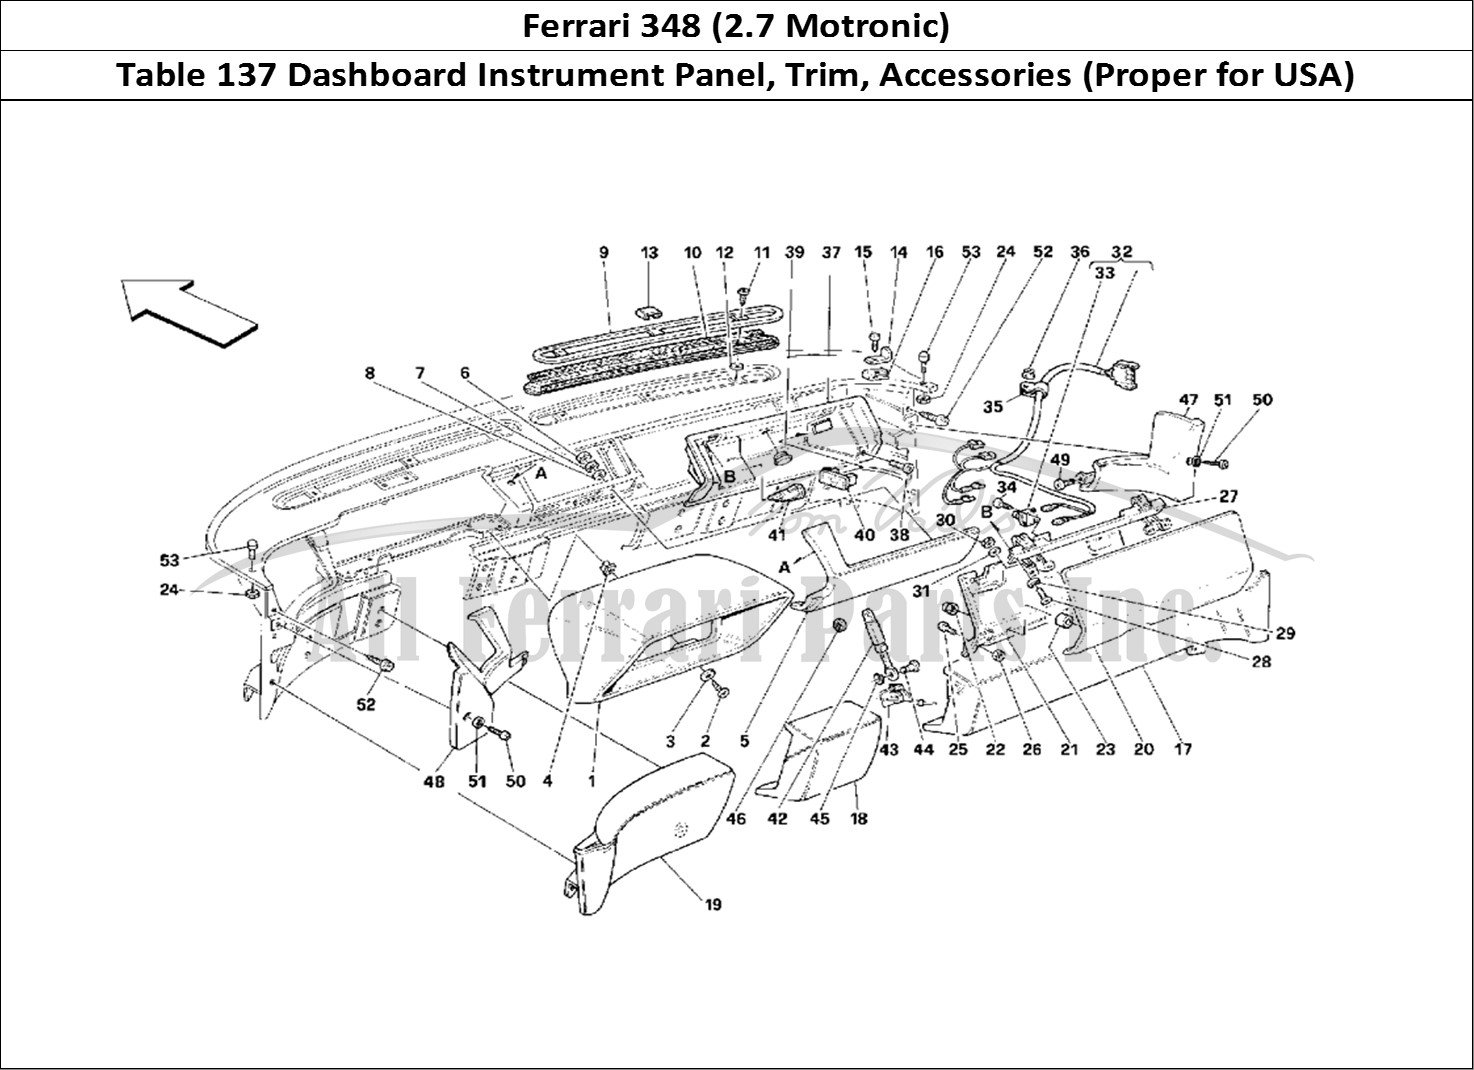 Ferrari Parts Ferrari 348 (2.7 Motronic) Page 137 Dashboard - Trim and Acce